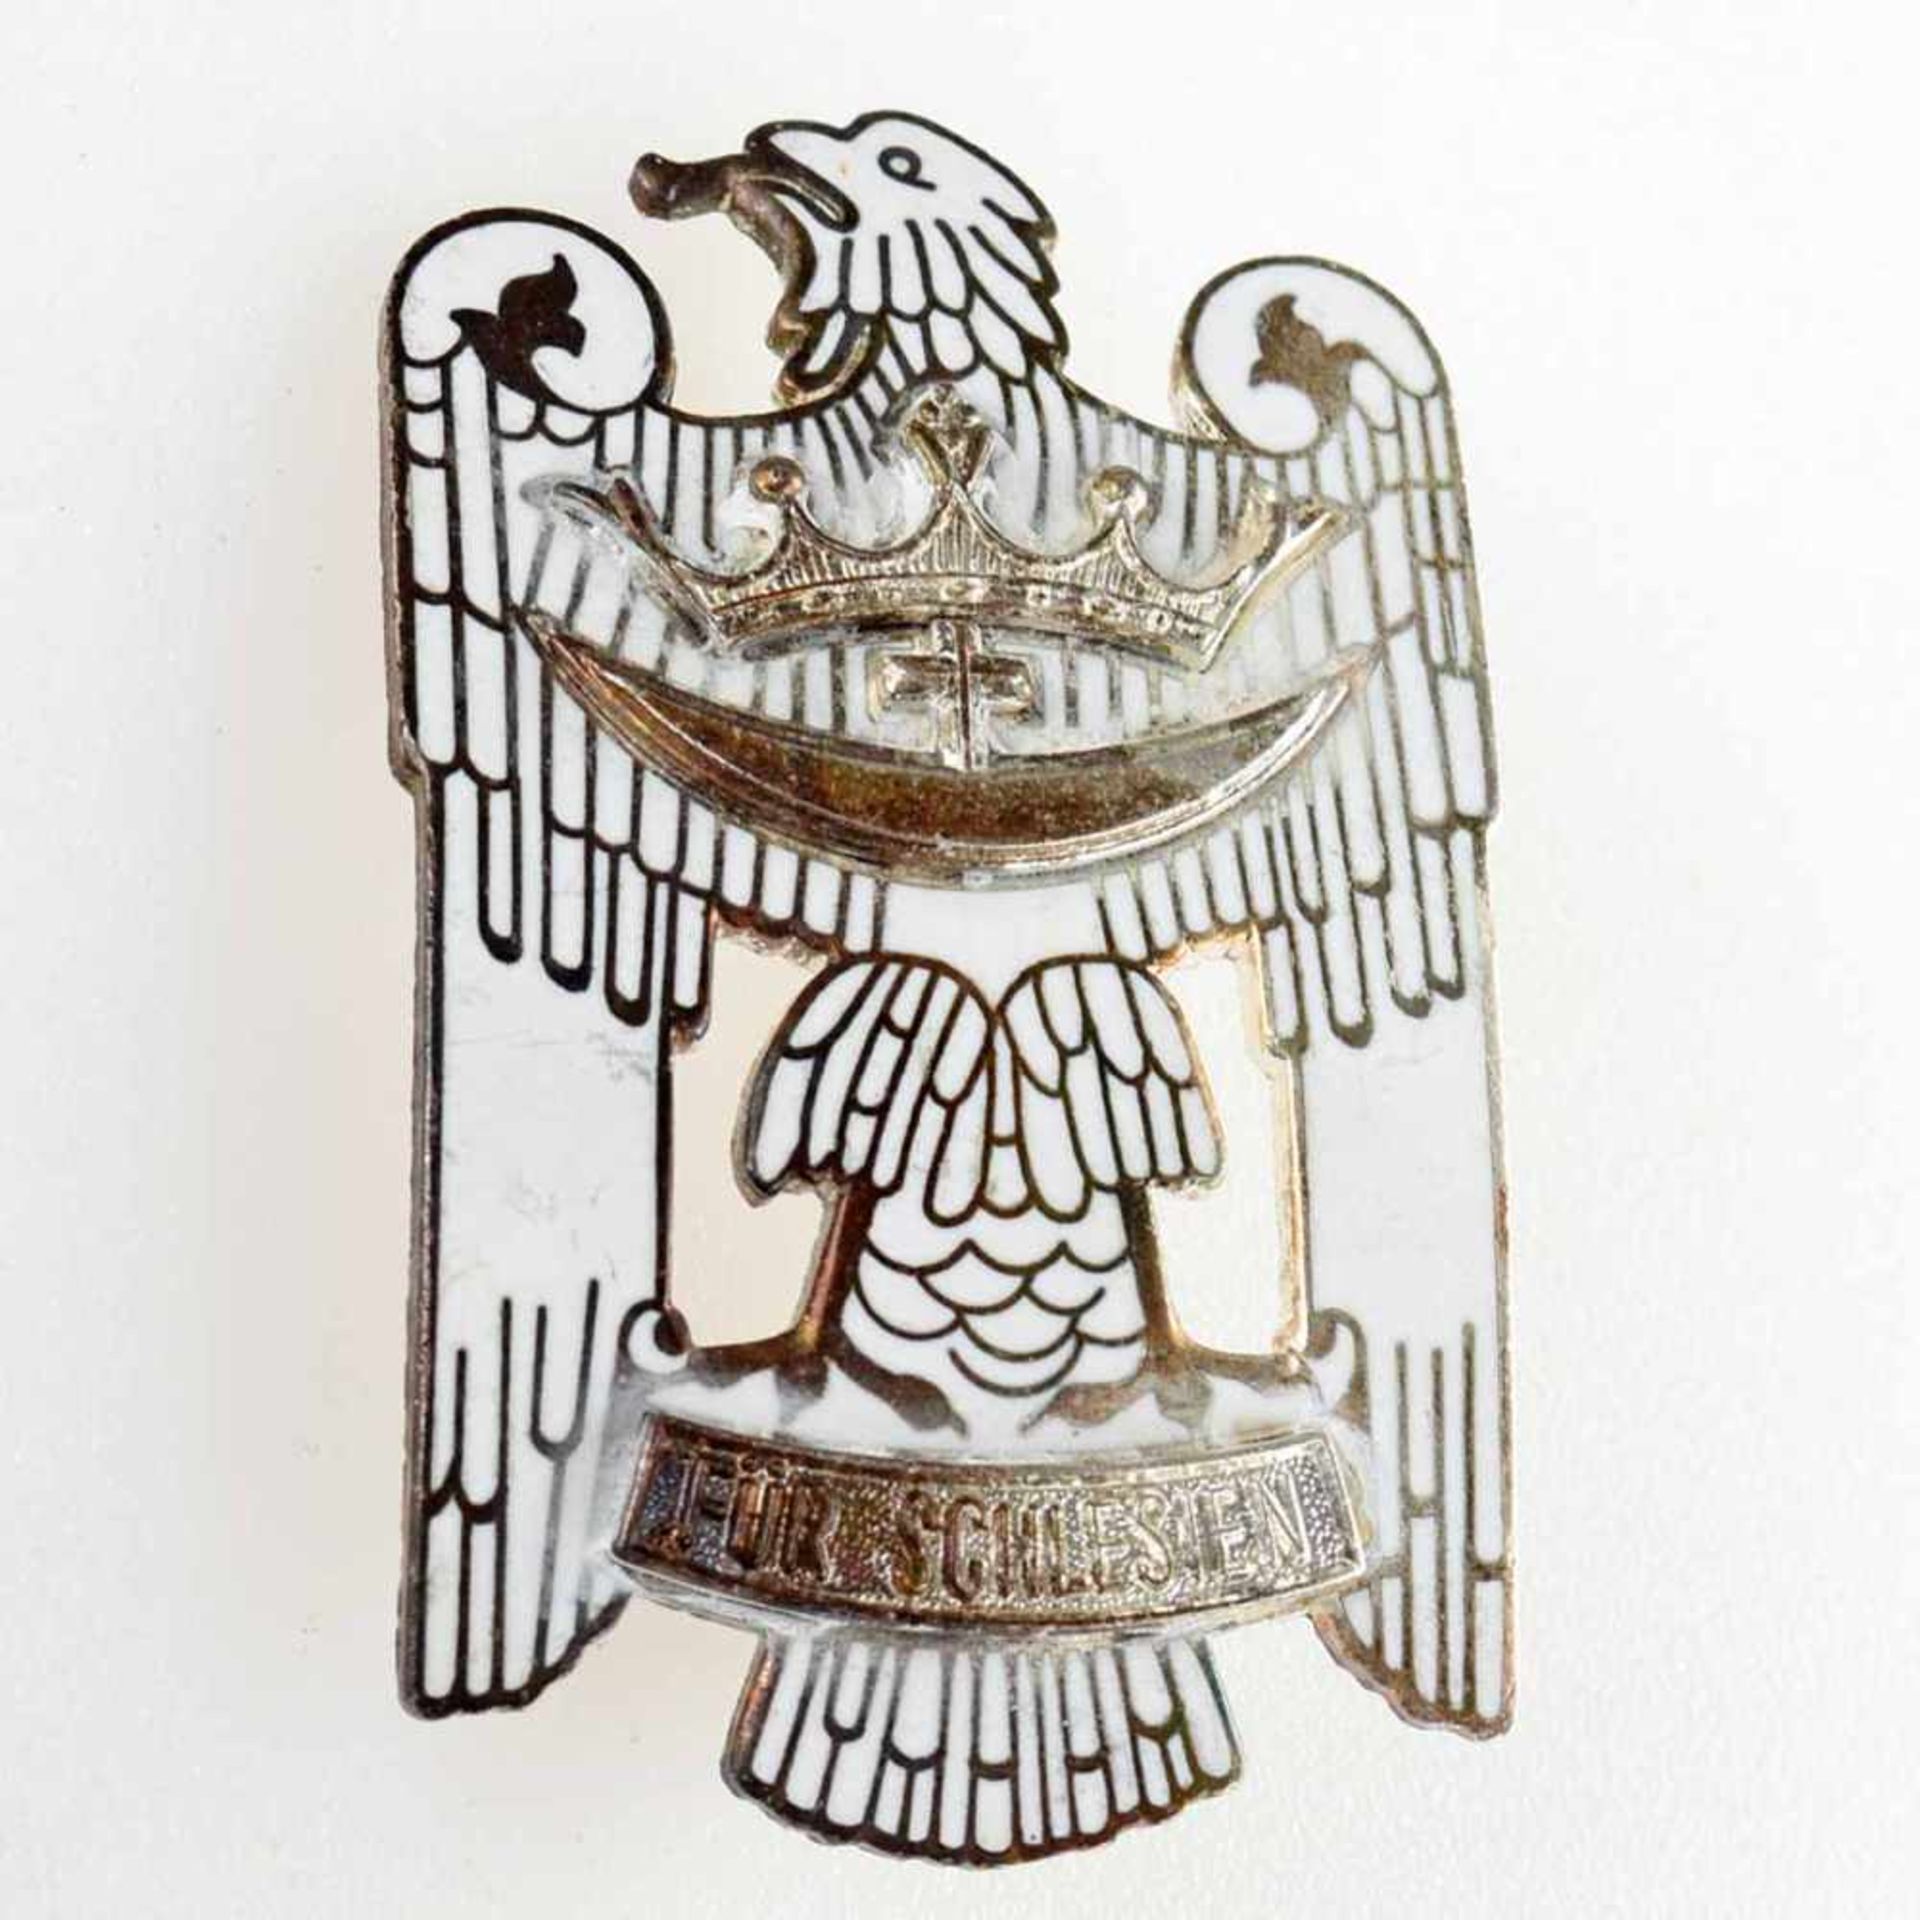 Auszeichnung Schlesien weiß emailliert, der große "Schlesische Adler" ("Für Schlesien"), rs. - Bild 2 aus 3